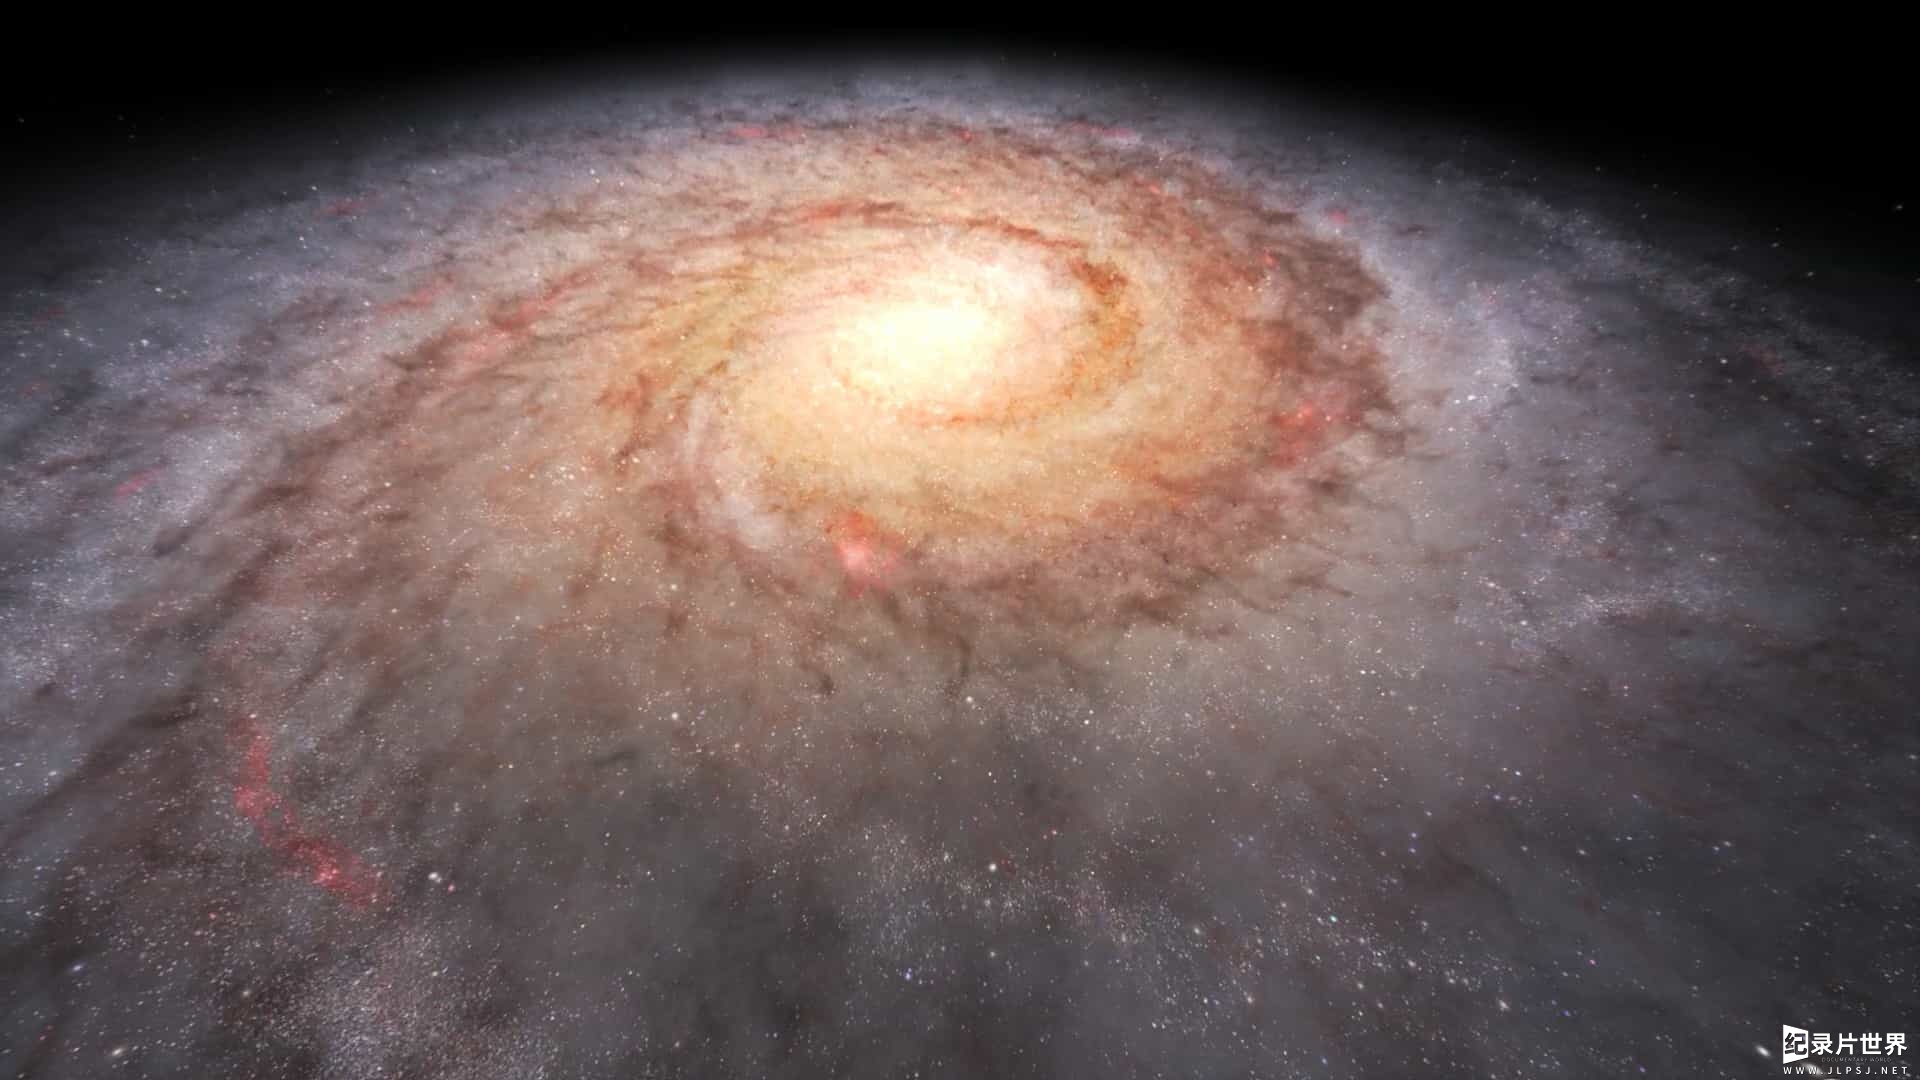 国家地理/宇宙探索纪录片《走进银河 Inside the Milky Way》全1集